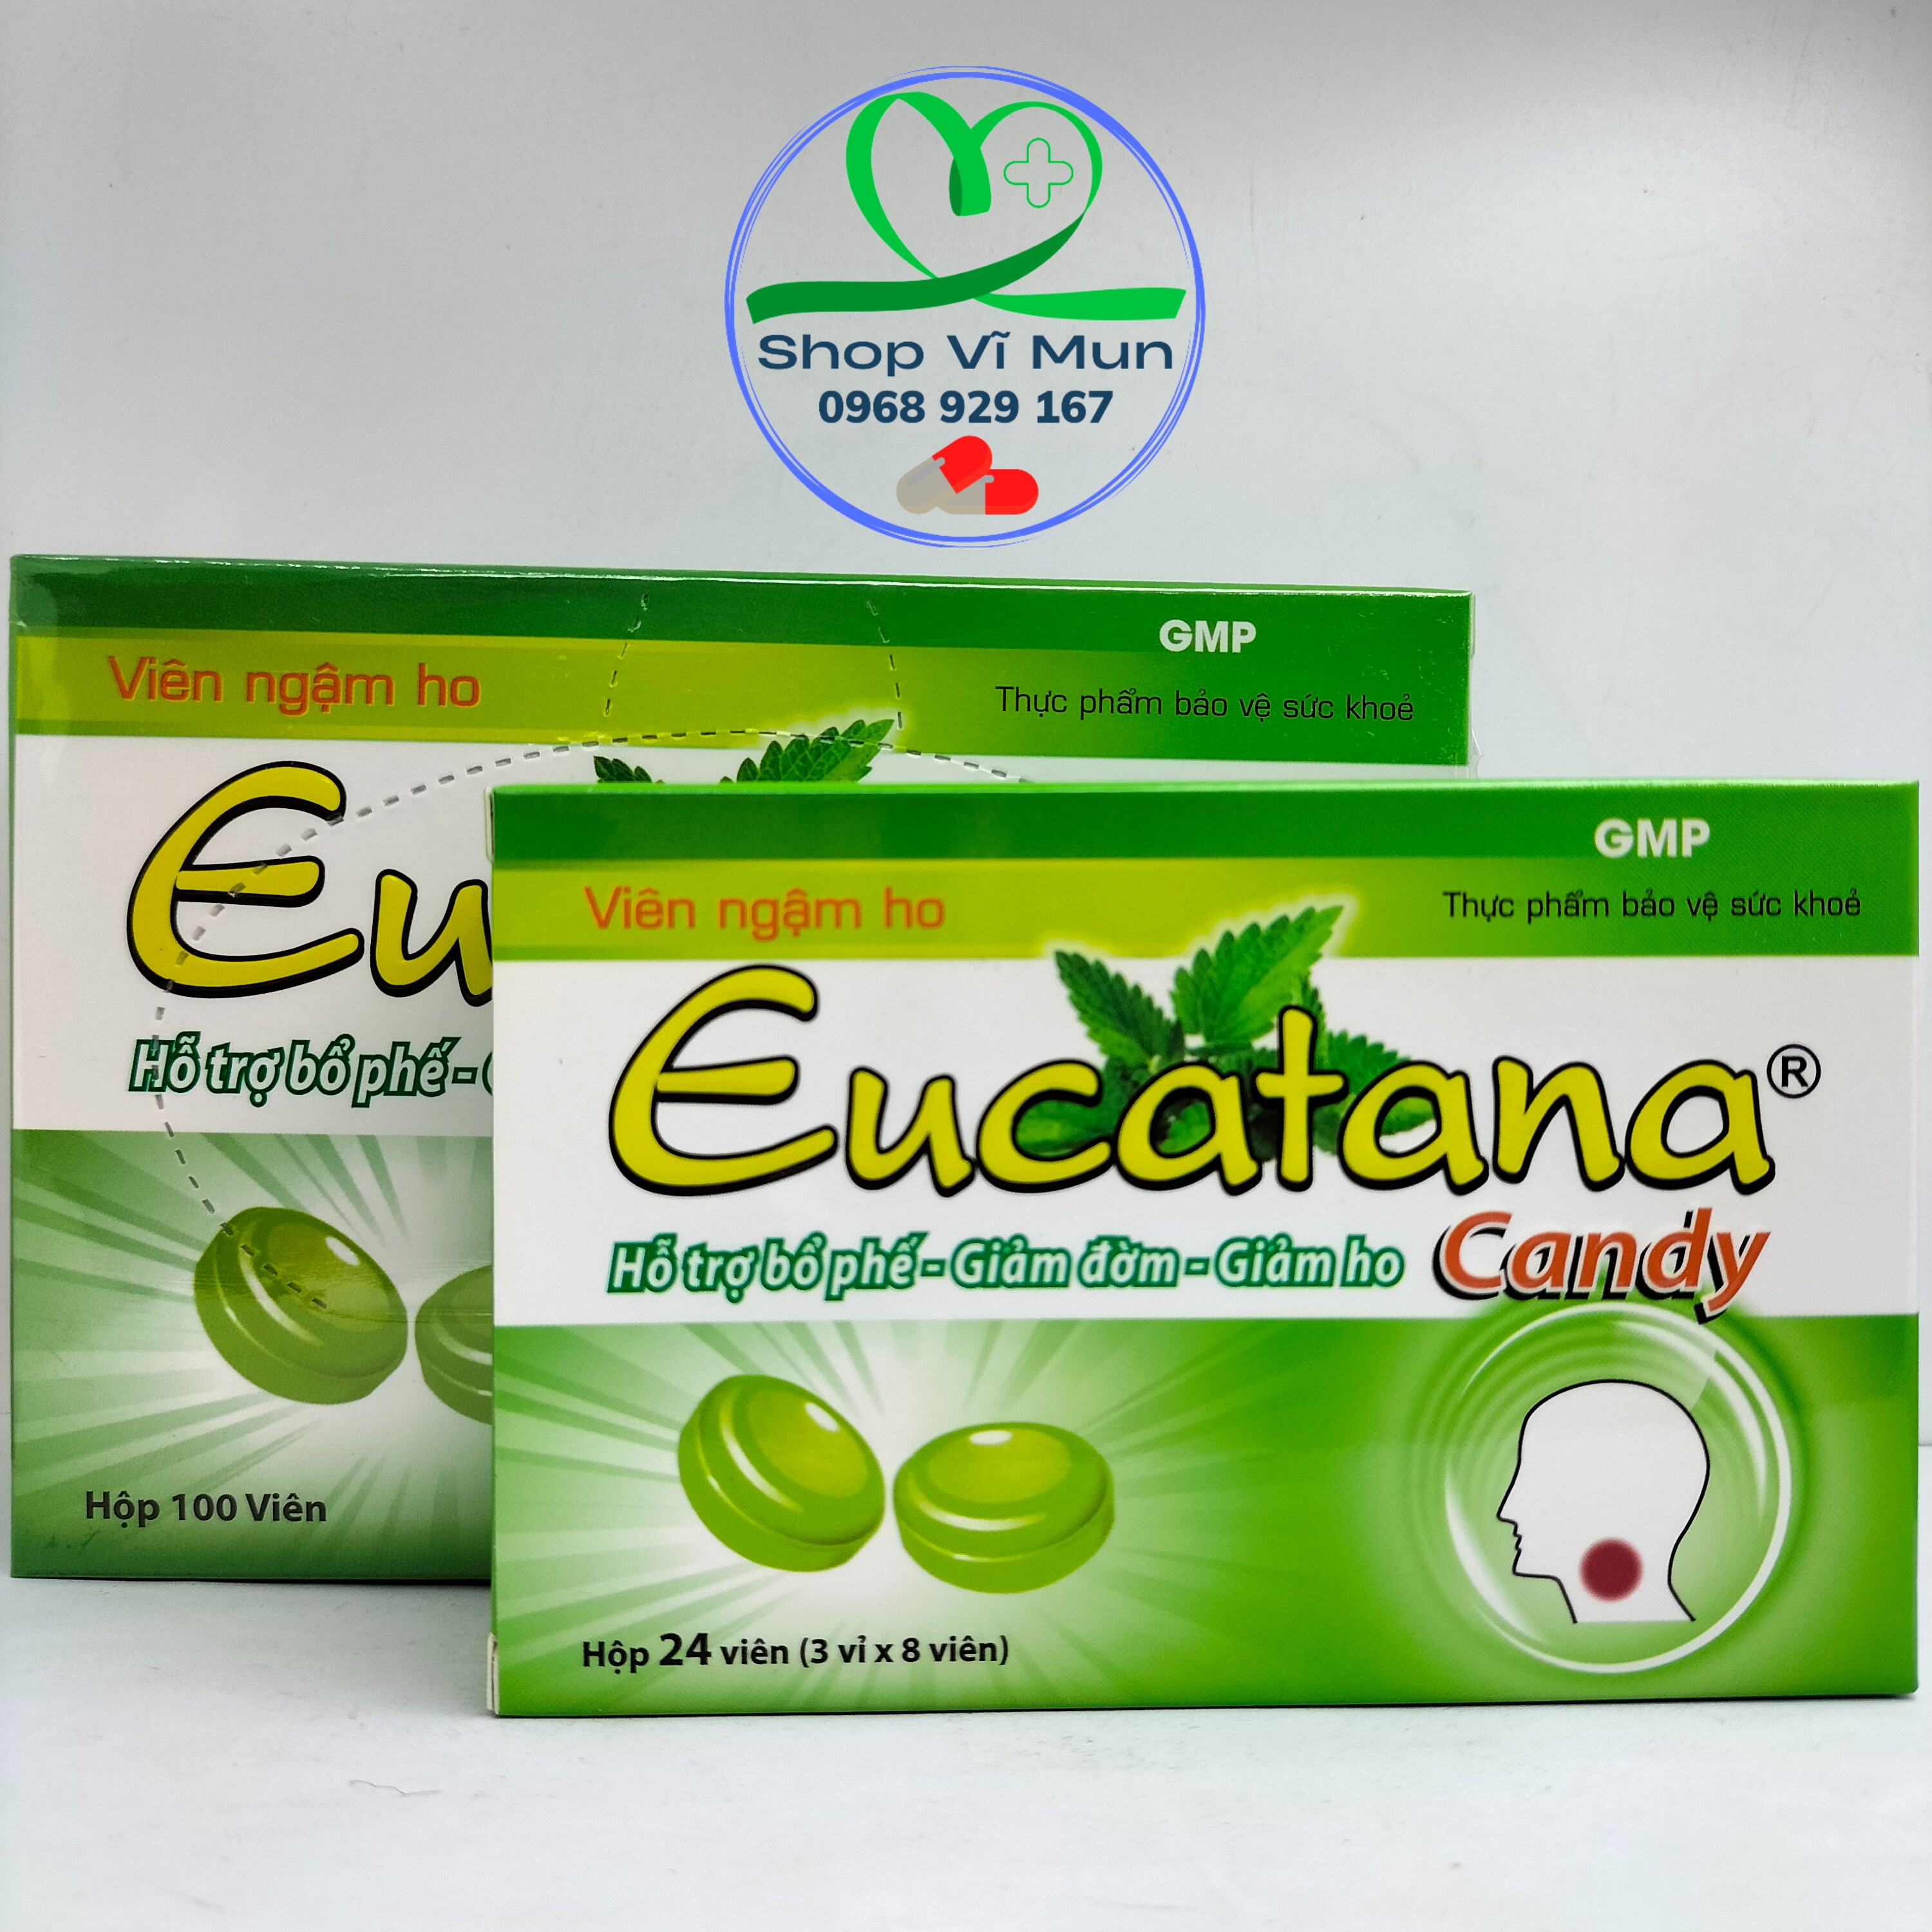 Viên ngậm ho Eucatana Candy - Hỗ trợ bổ phế, giảm đờm, giảm ho